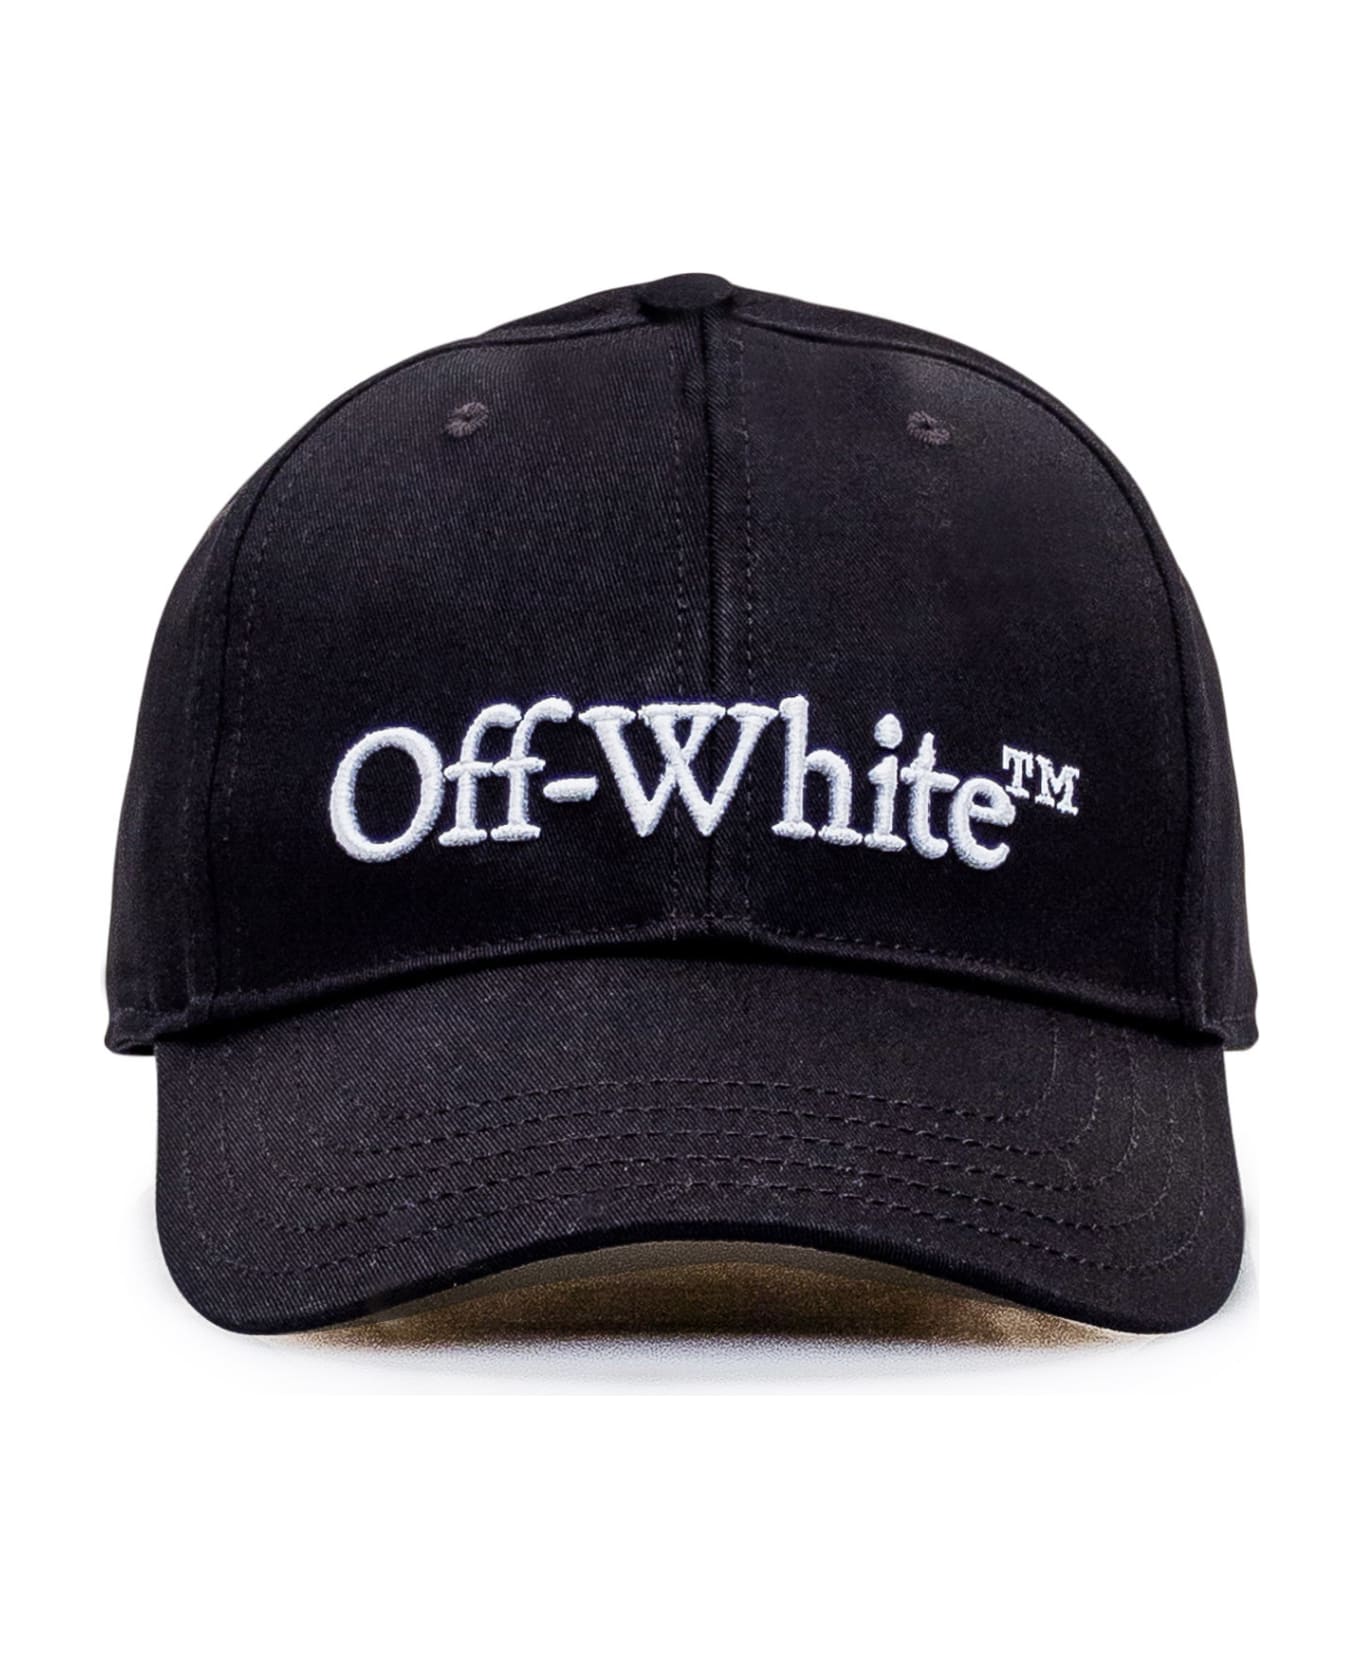 Off-White Hat - Black White